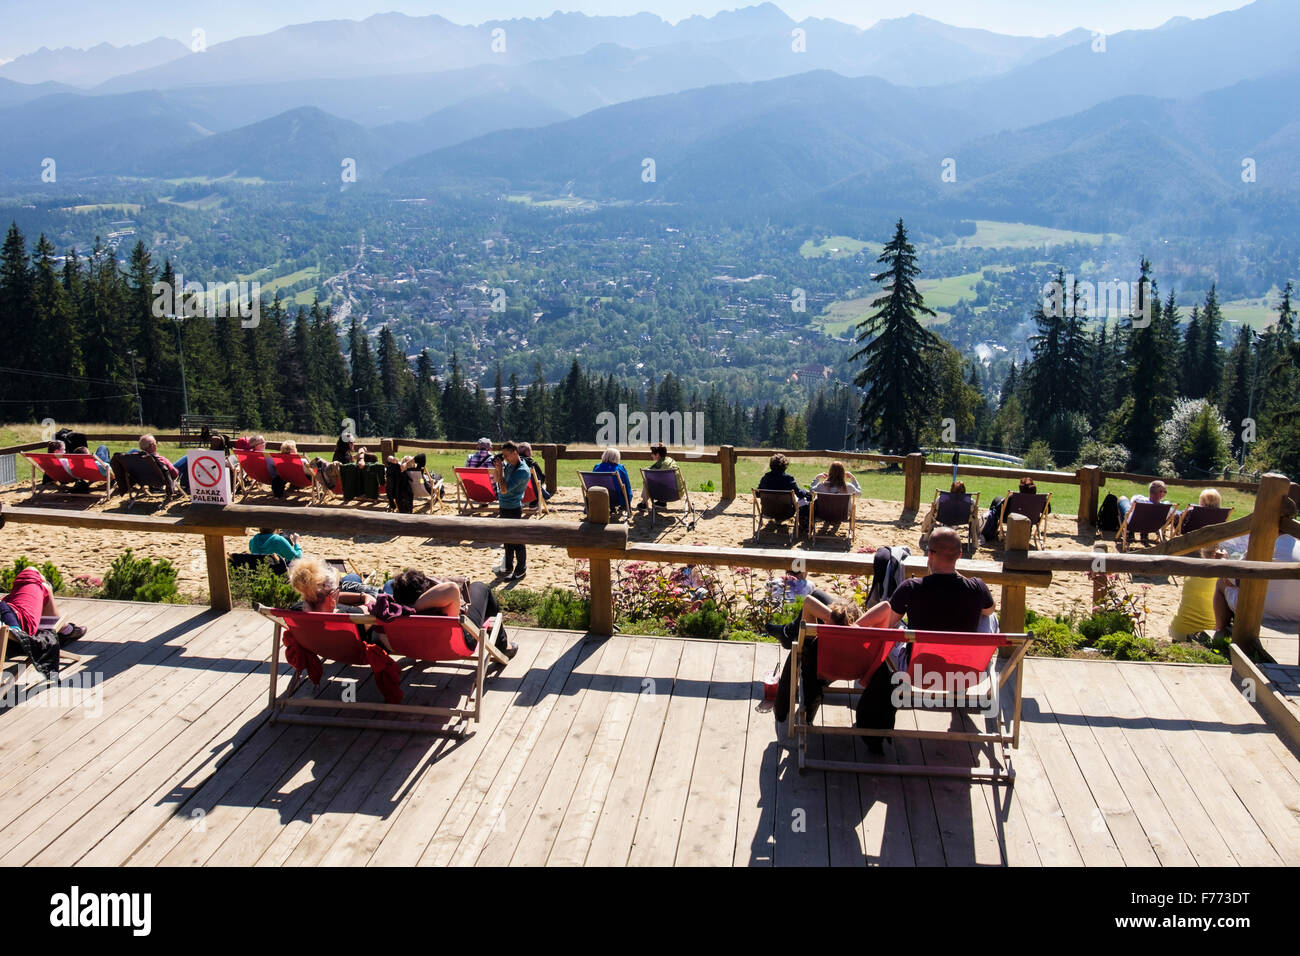 Persone godetevi il sole a prendere il sole in sedie a sdraio sul Gubałówka Mountain, Zakopane, Tatra County, Polonia, Europa Foto Stock